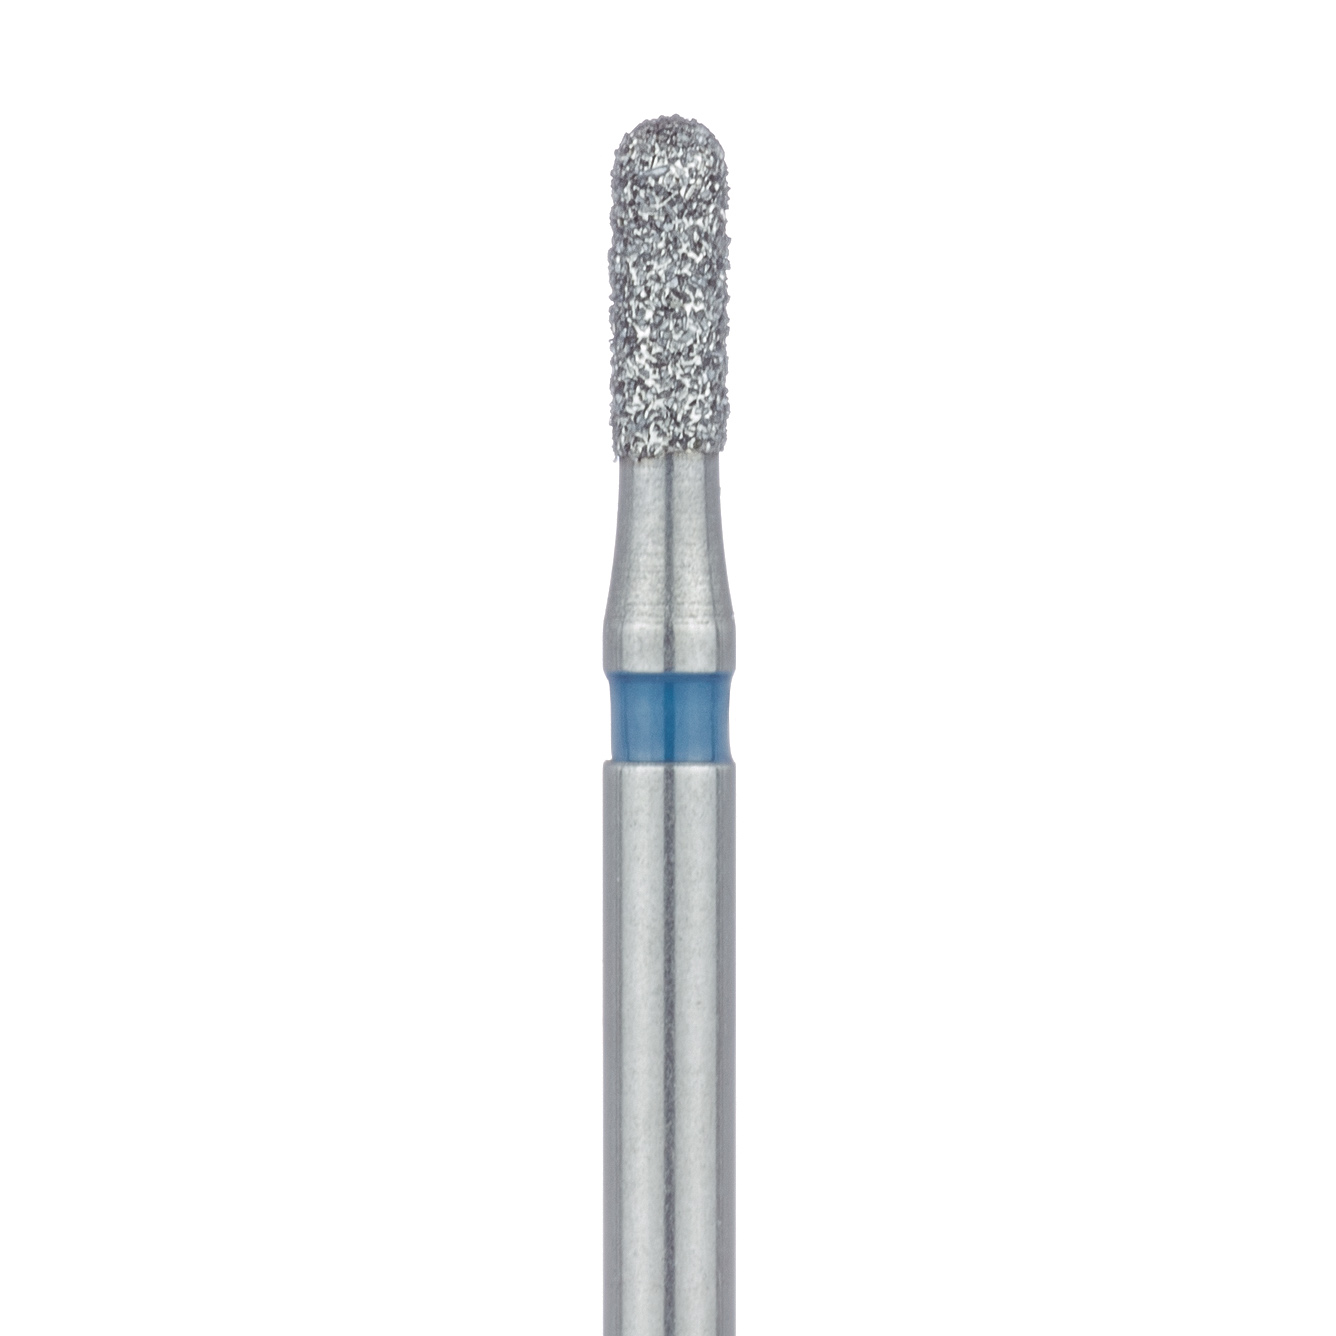 838-014-FG Round End Cylinder Diamond Bur, 1.2mm Ø, Medium, FG